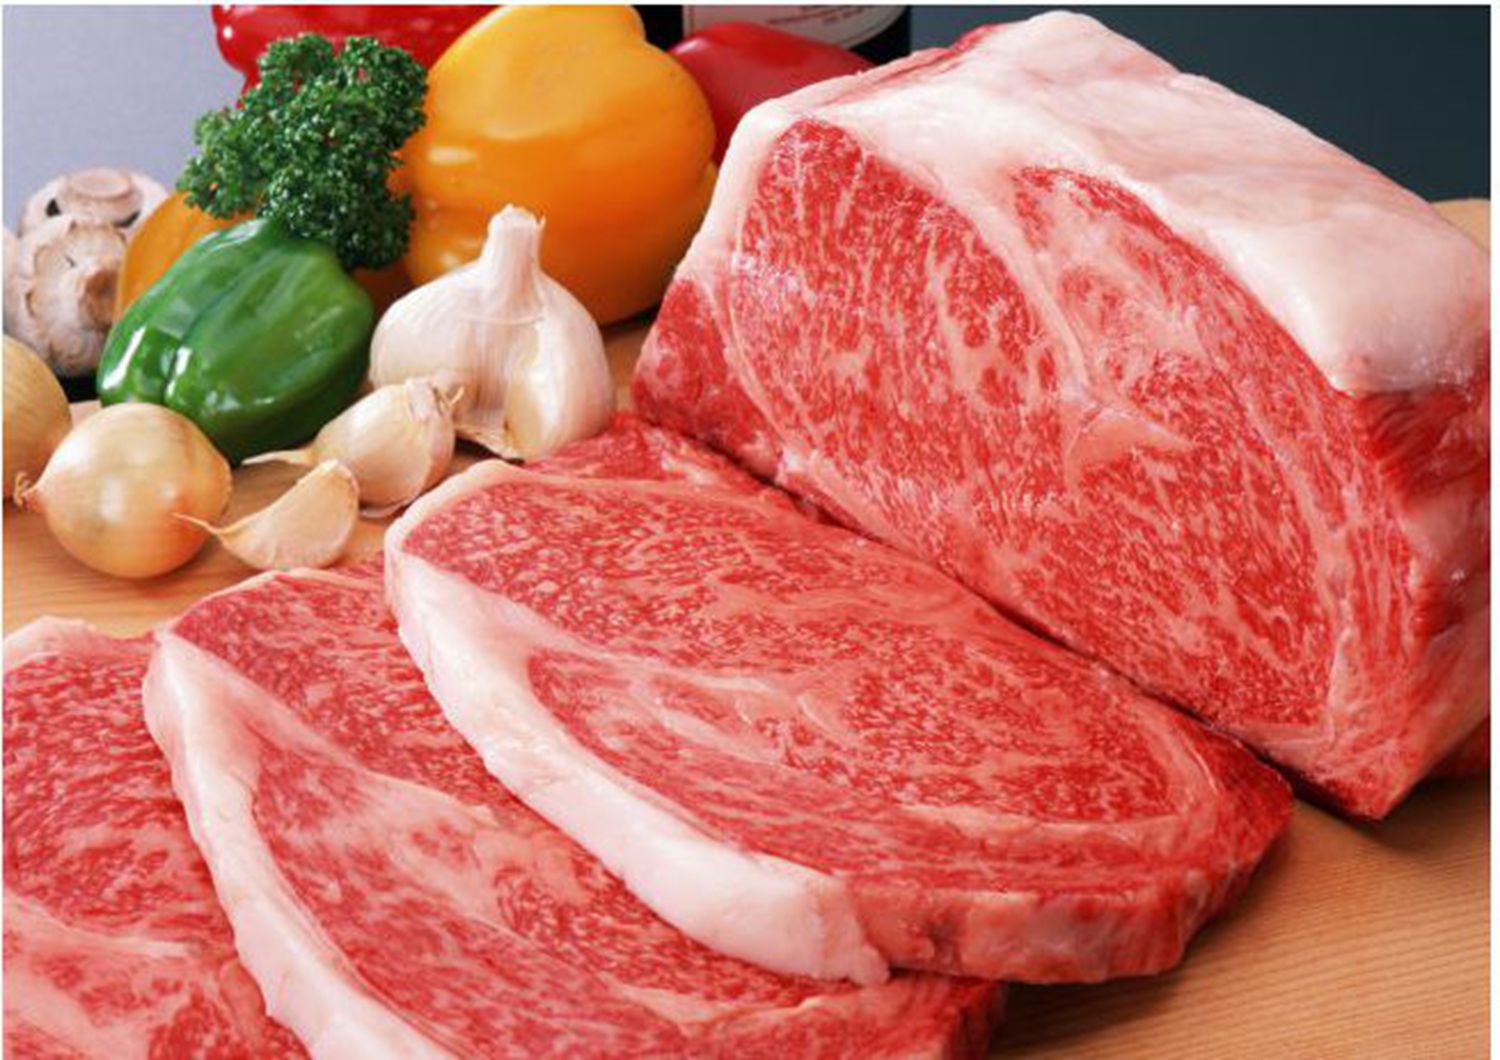 澳洲牛肉进口报关要多久?